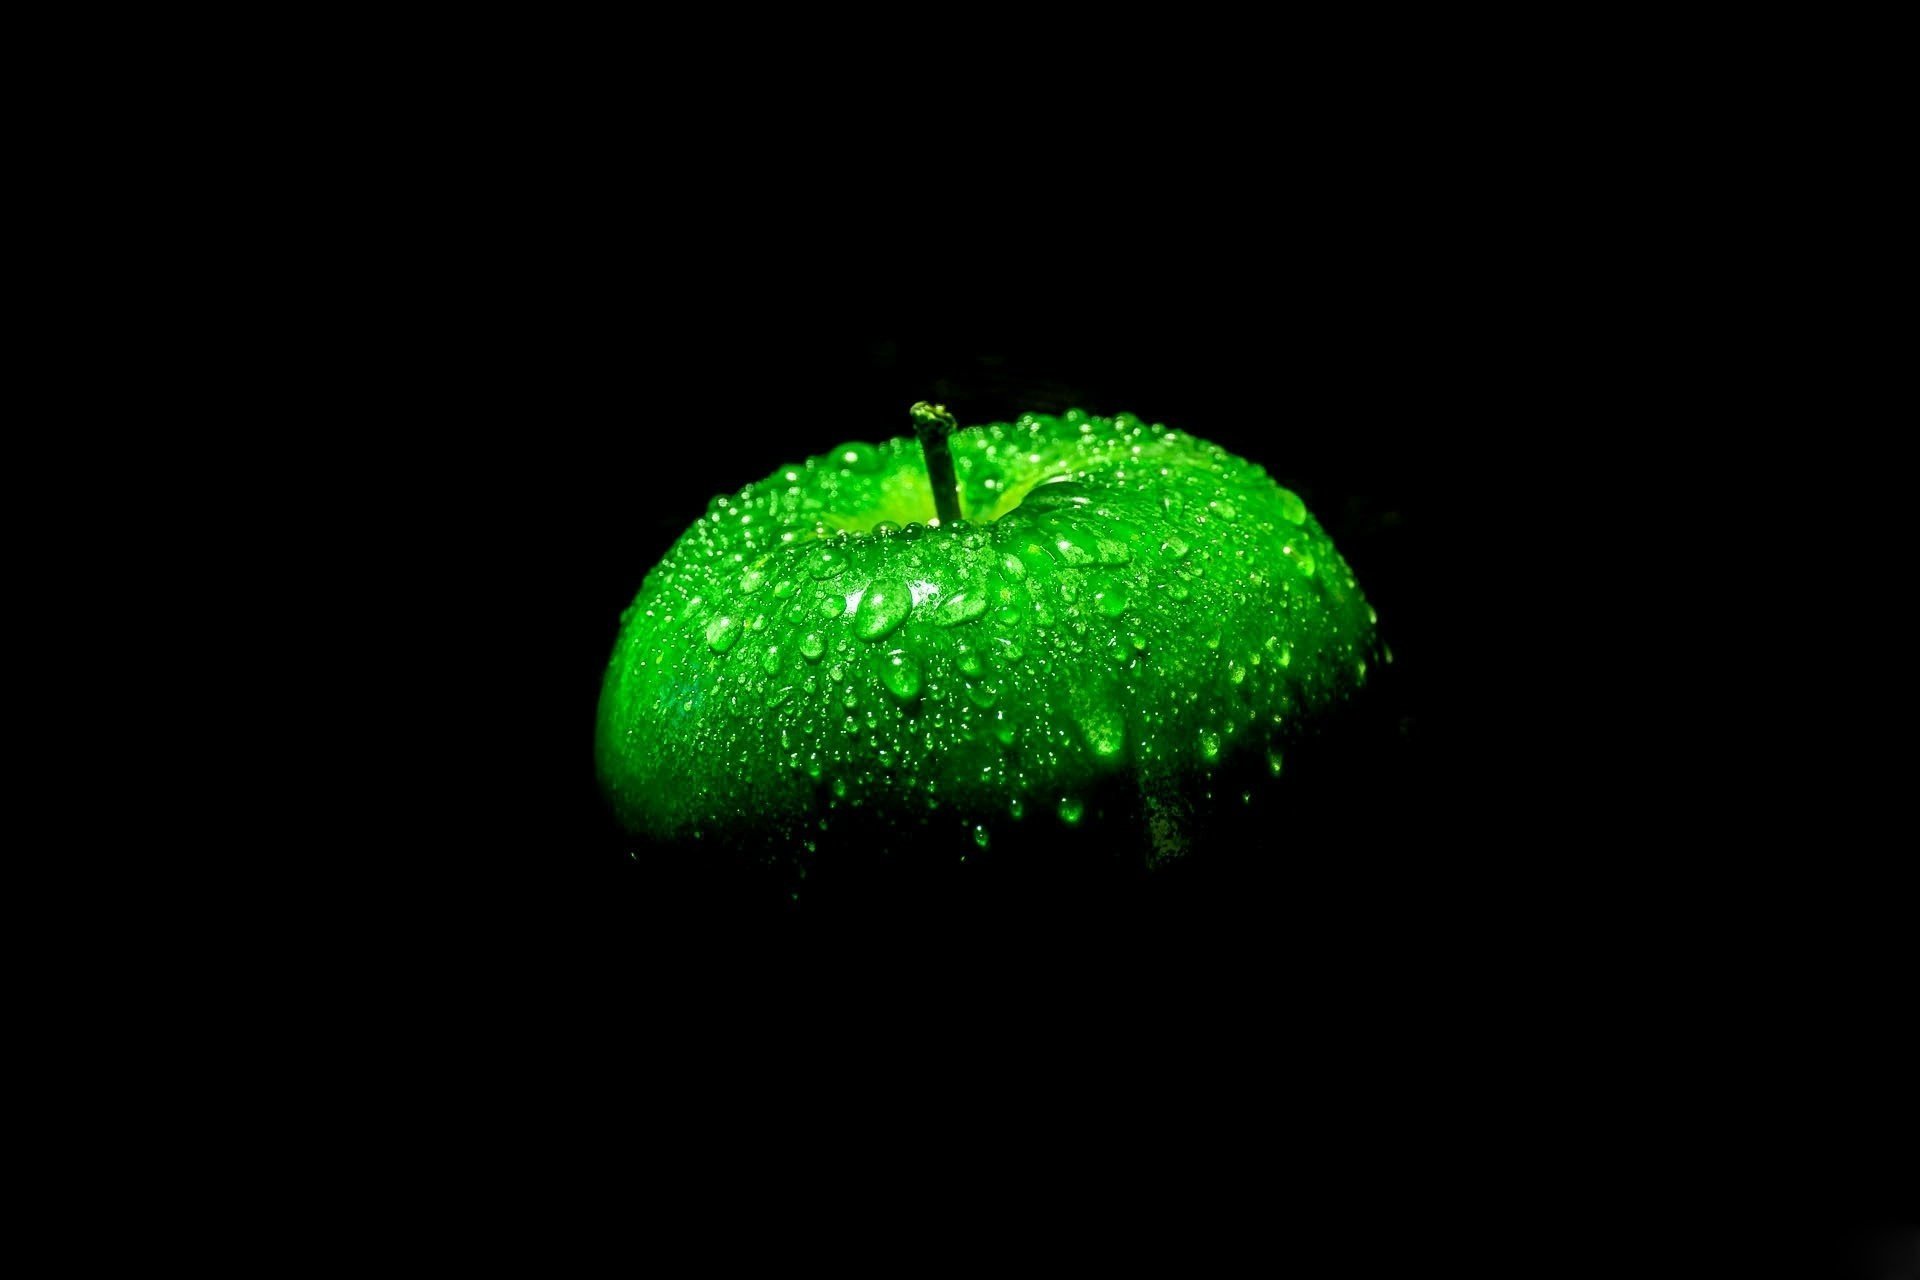 Зелёное яблоко на чёрном фоне